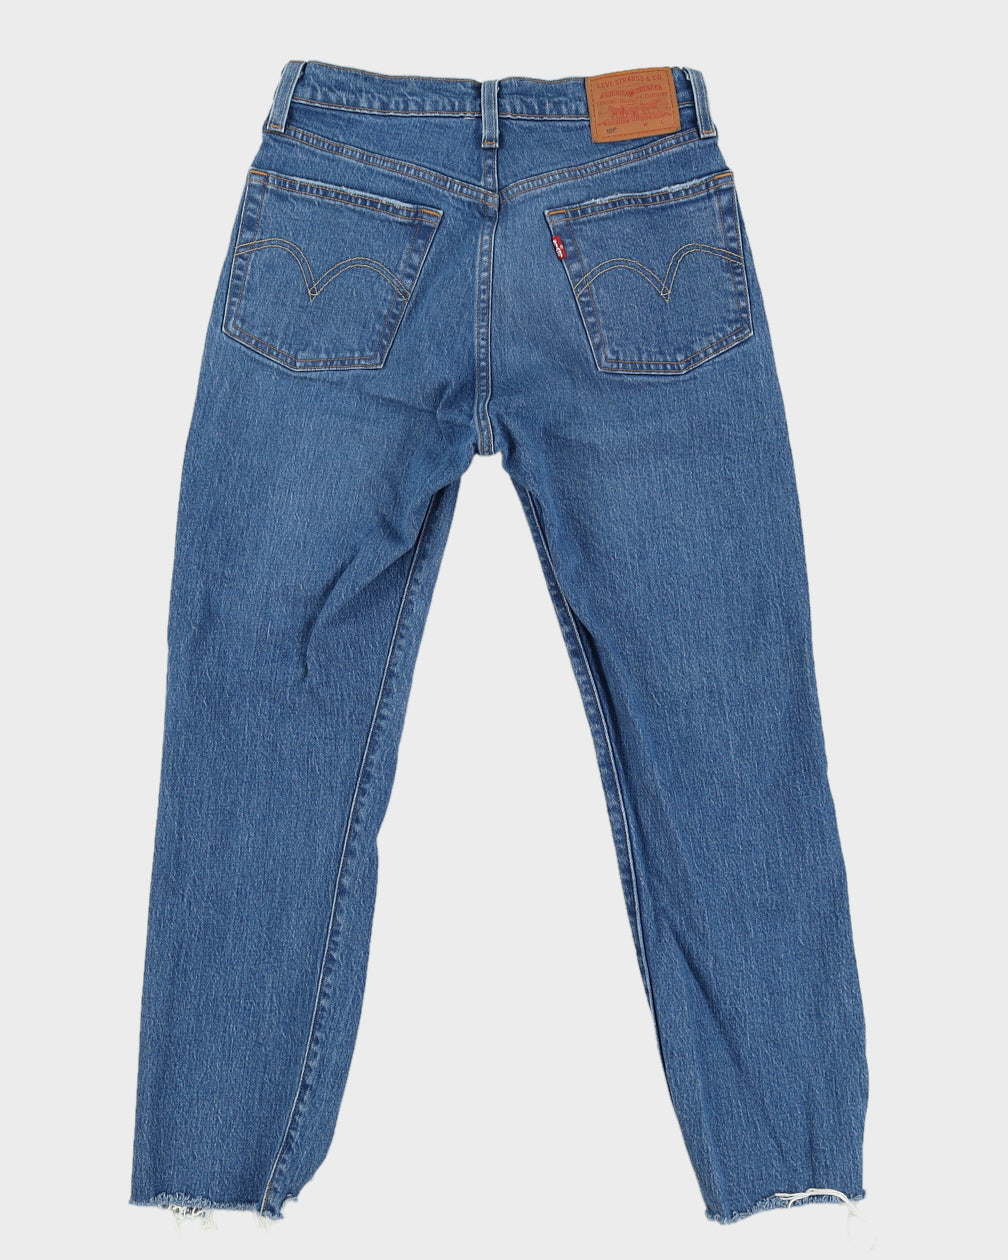 Levi's Medium Wash 501 Raw Hem Jeans - W26 L26